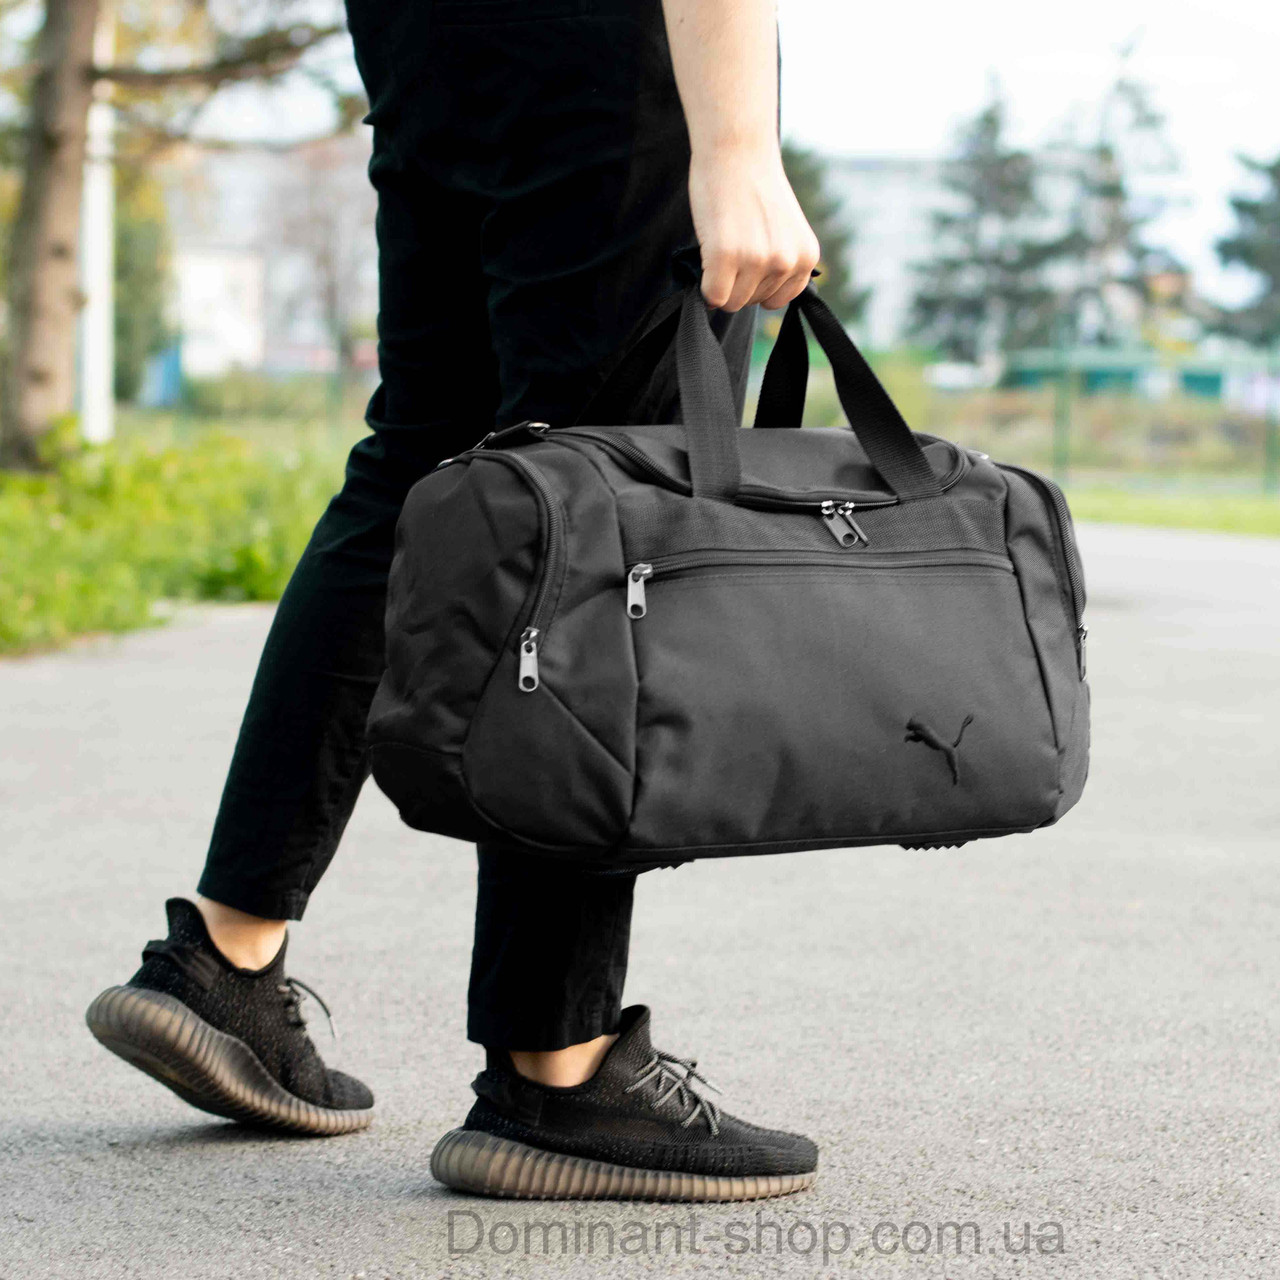 Чоловіча спортивна сумка дорожня P-TALES чорна для поїздок та тренувань містка на 36 літри